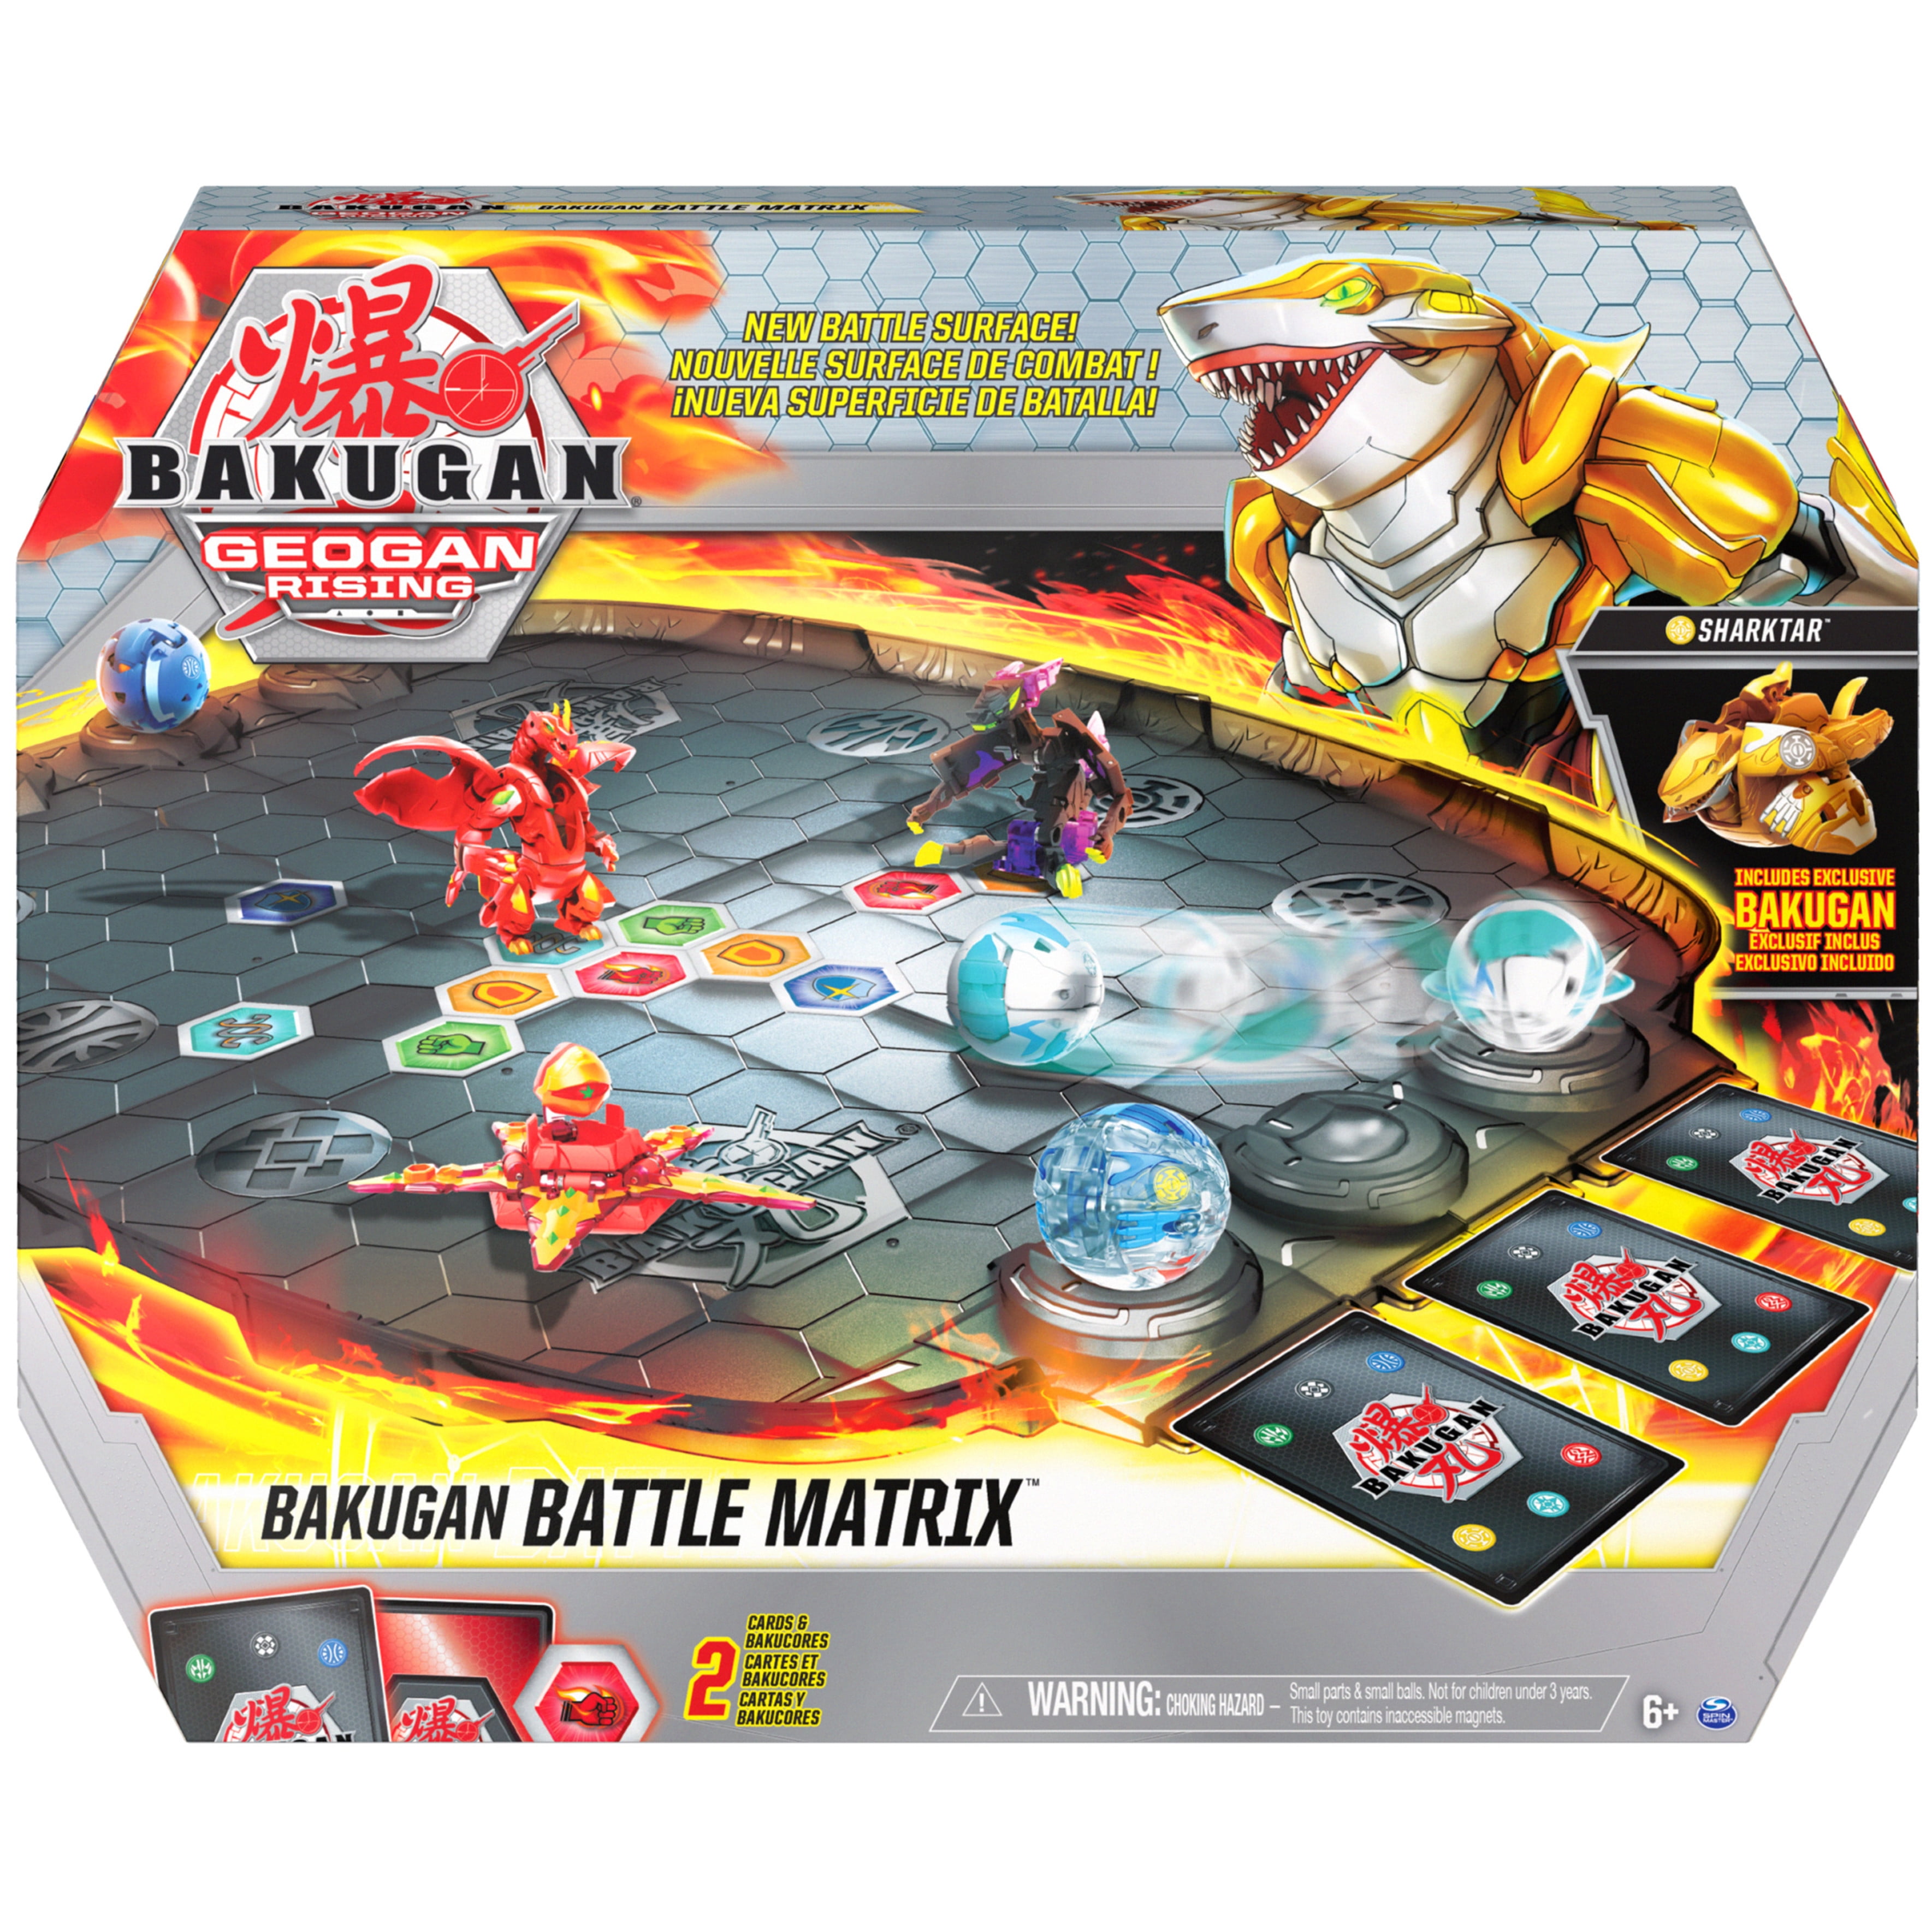 Bakugan Battle Matrix tablero de juego de lujo con Exclusivo Oro sharktar Bakugan, 